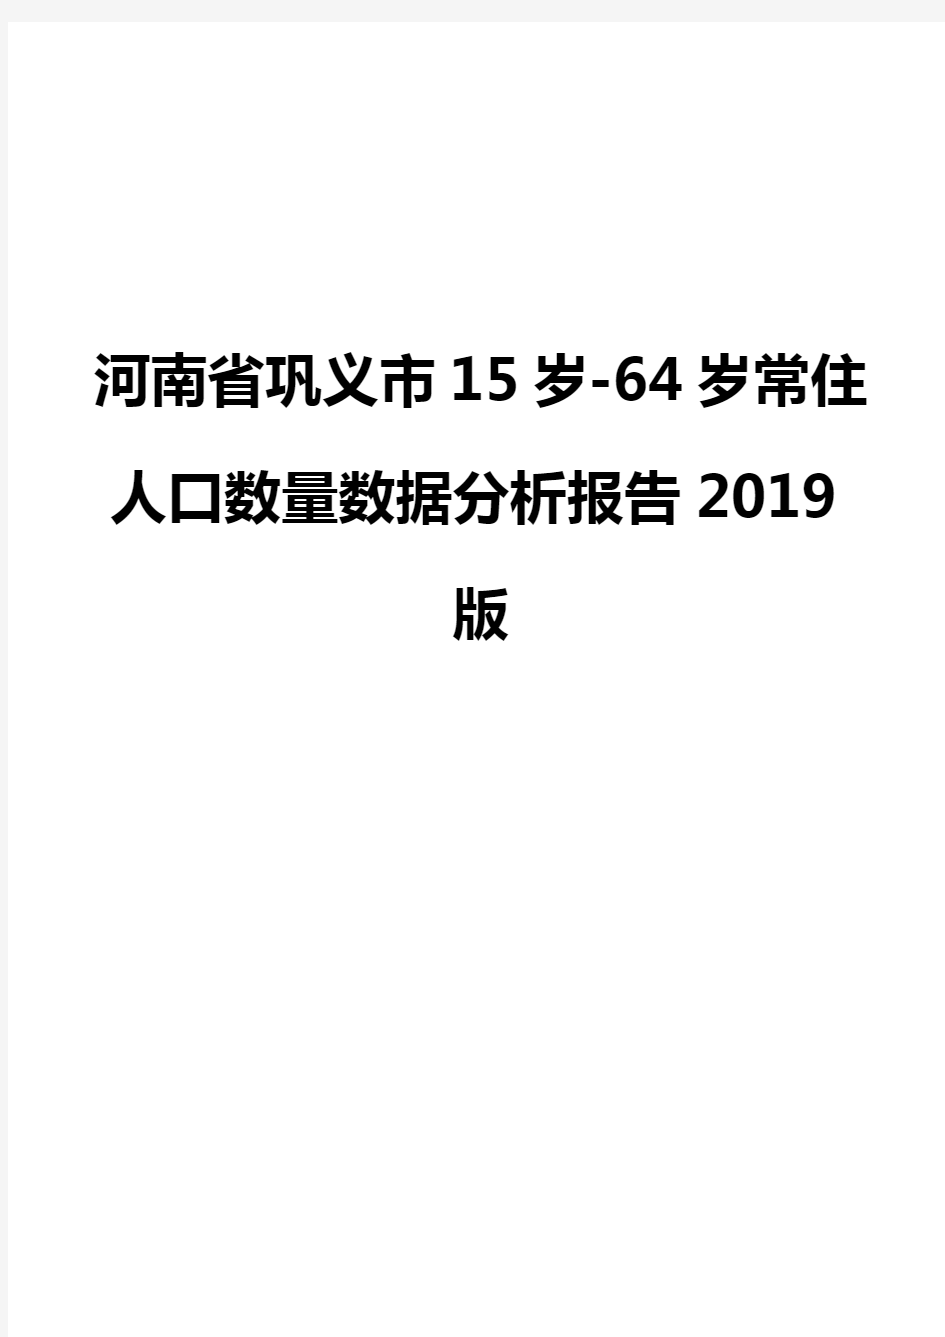 河南省巩义市15岁-64岁常住人口数量数据分析报告2019版